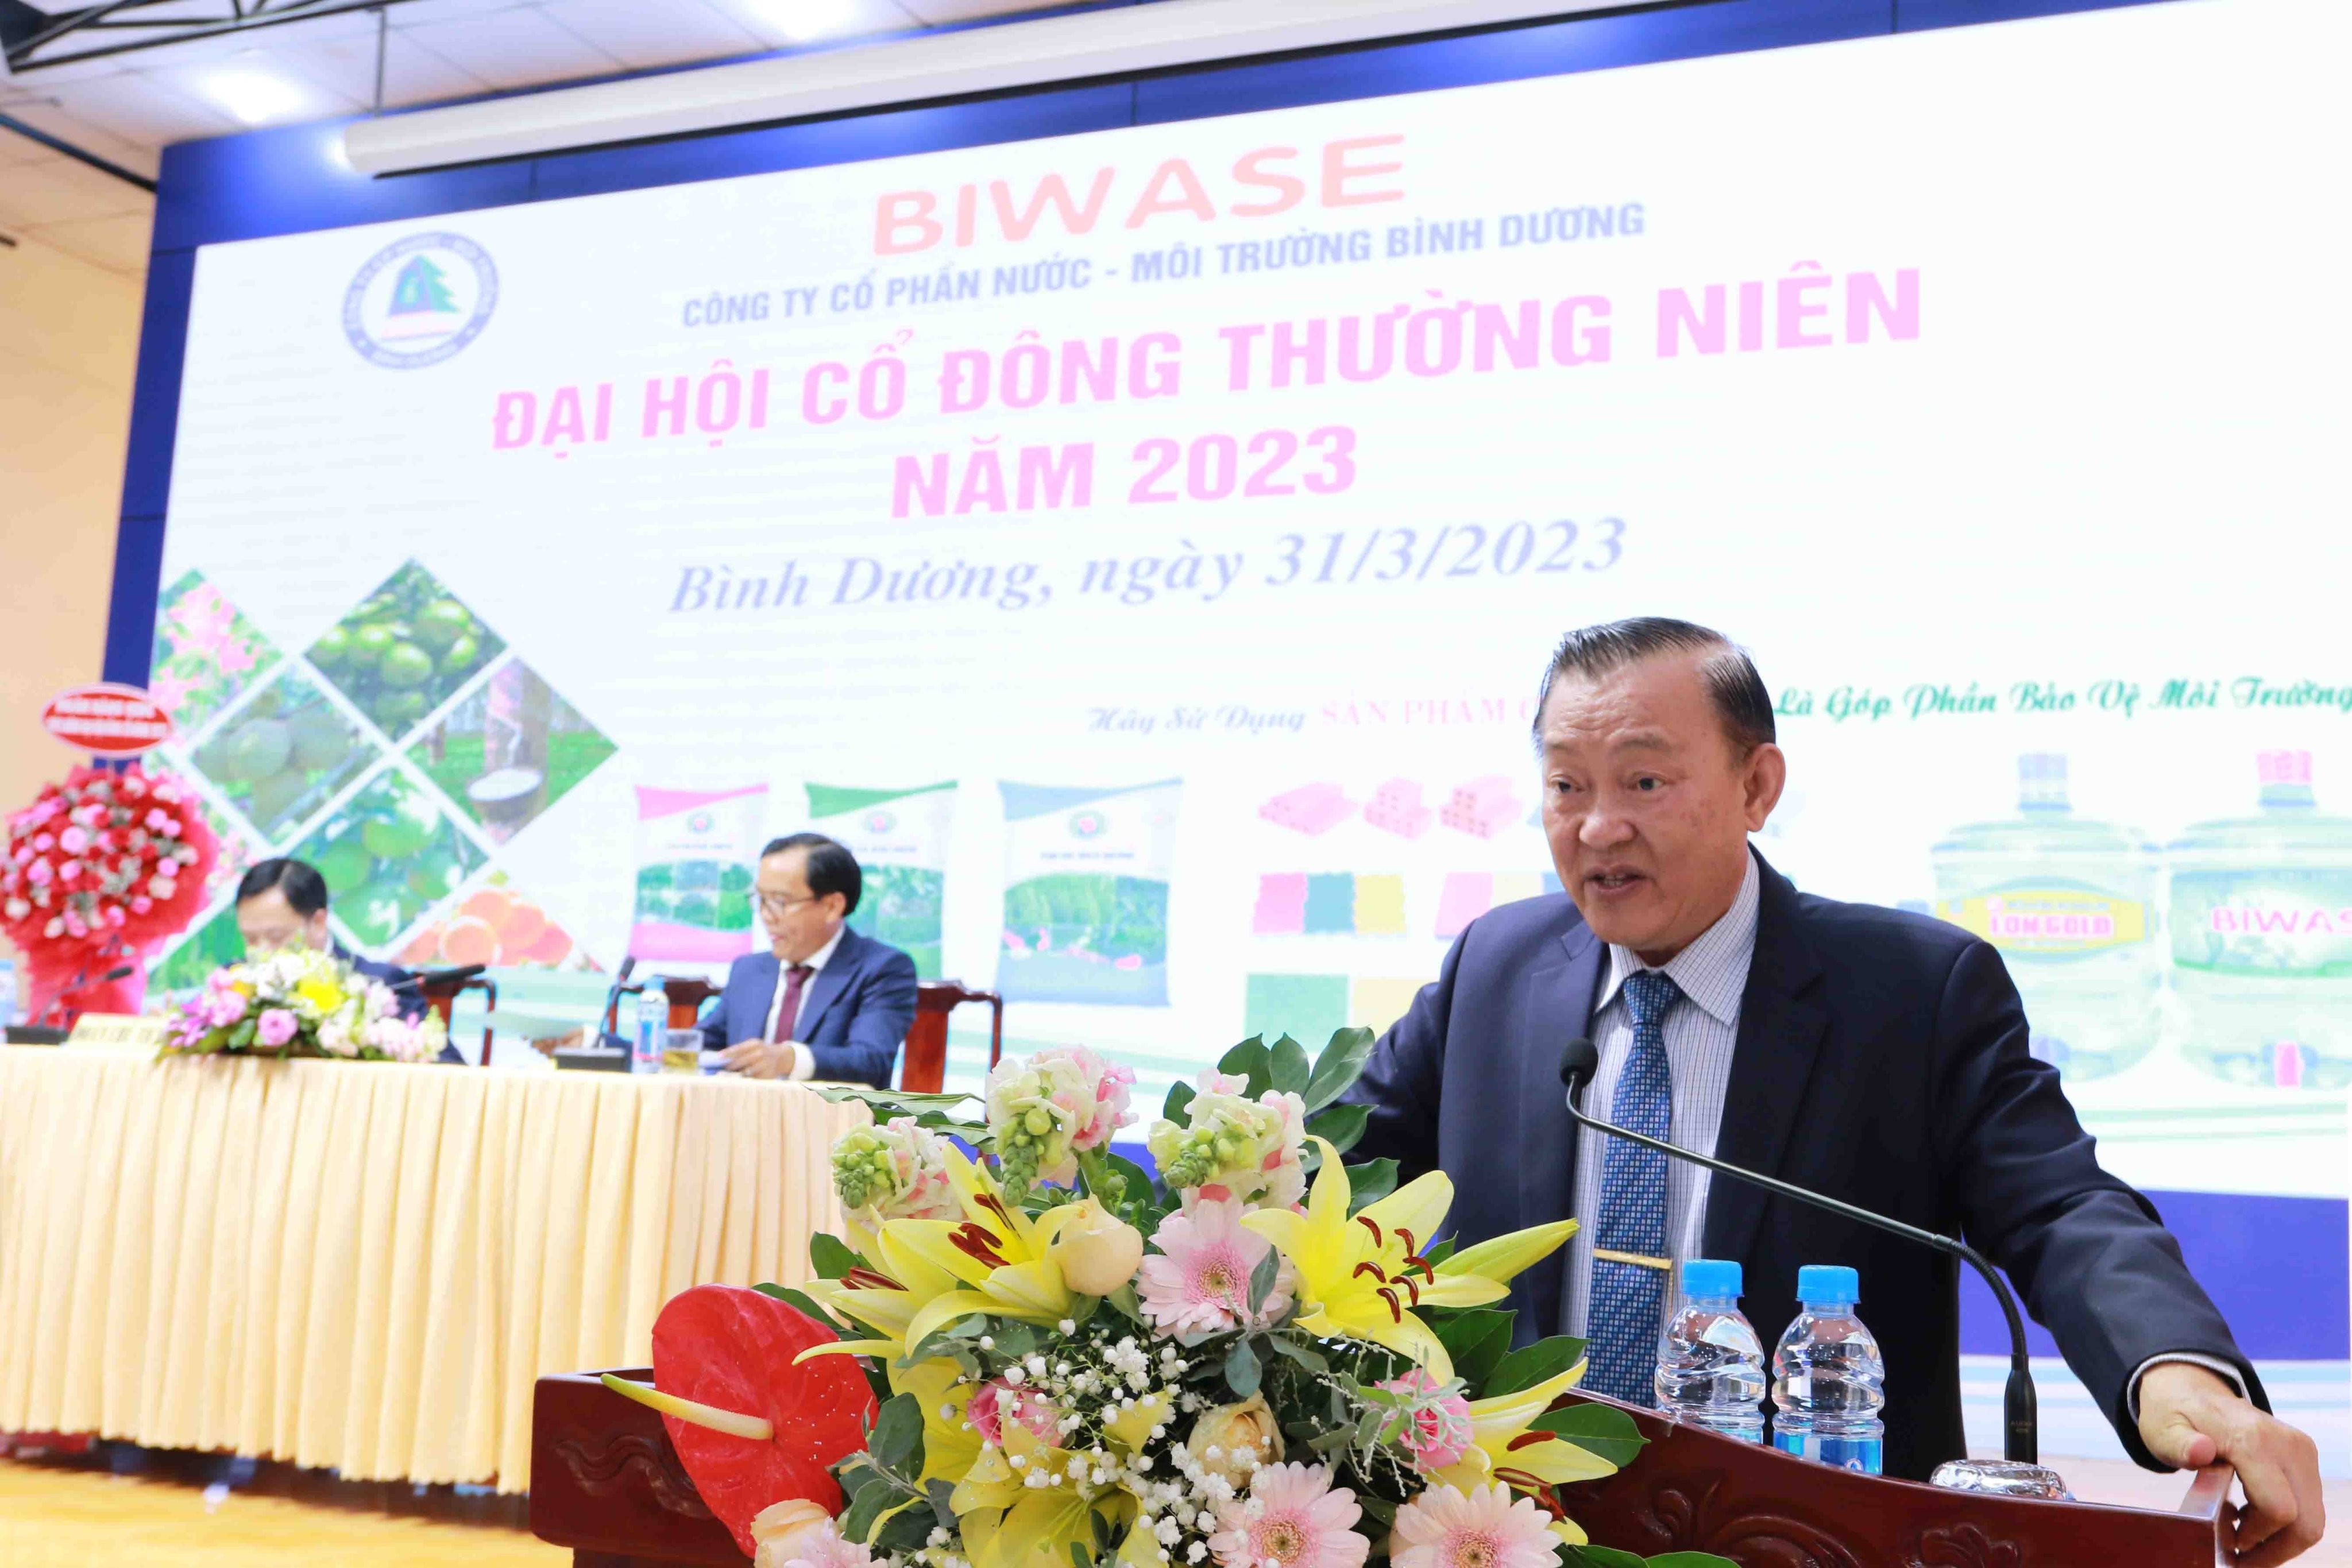 Ông Nguyễn Văn Thiền, Chủ tịch Biwase phát biểu về kết quả hoạt động năm 2022 và kế hoạch kinh doanh năm 2023 (Ảnh: Lê Toàn).